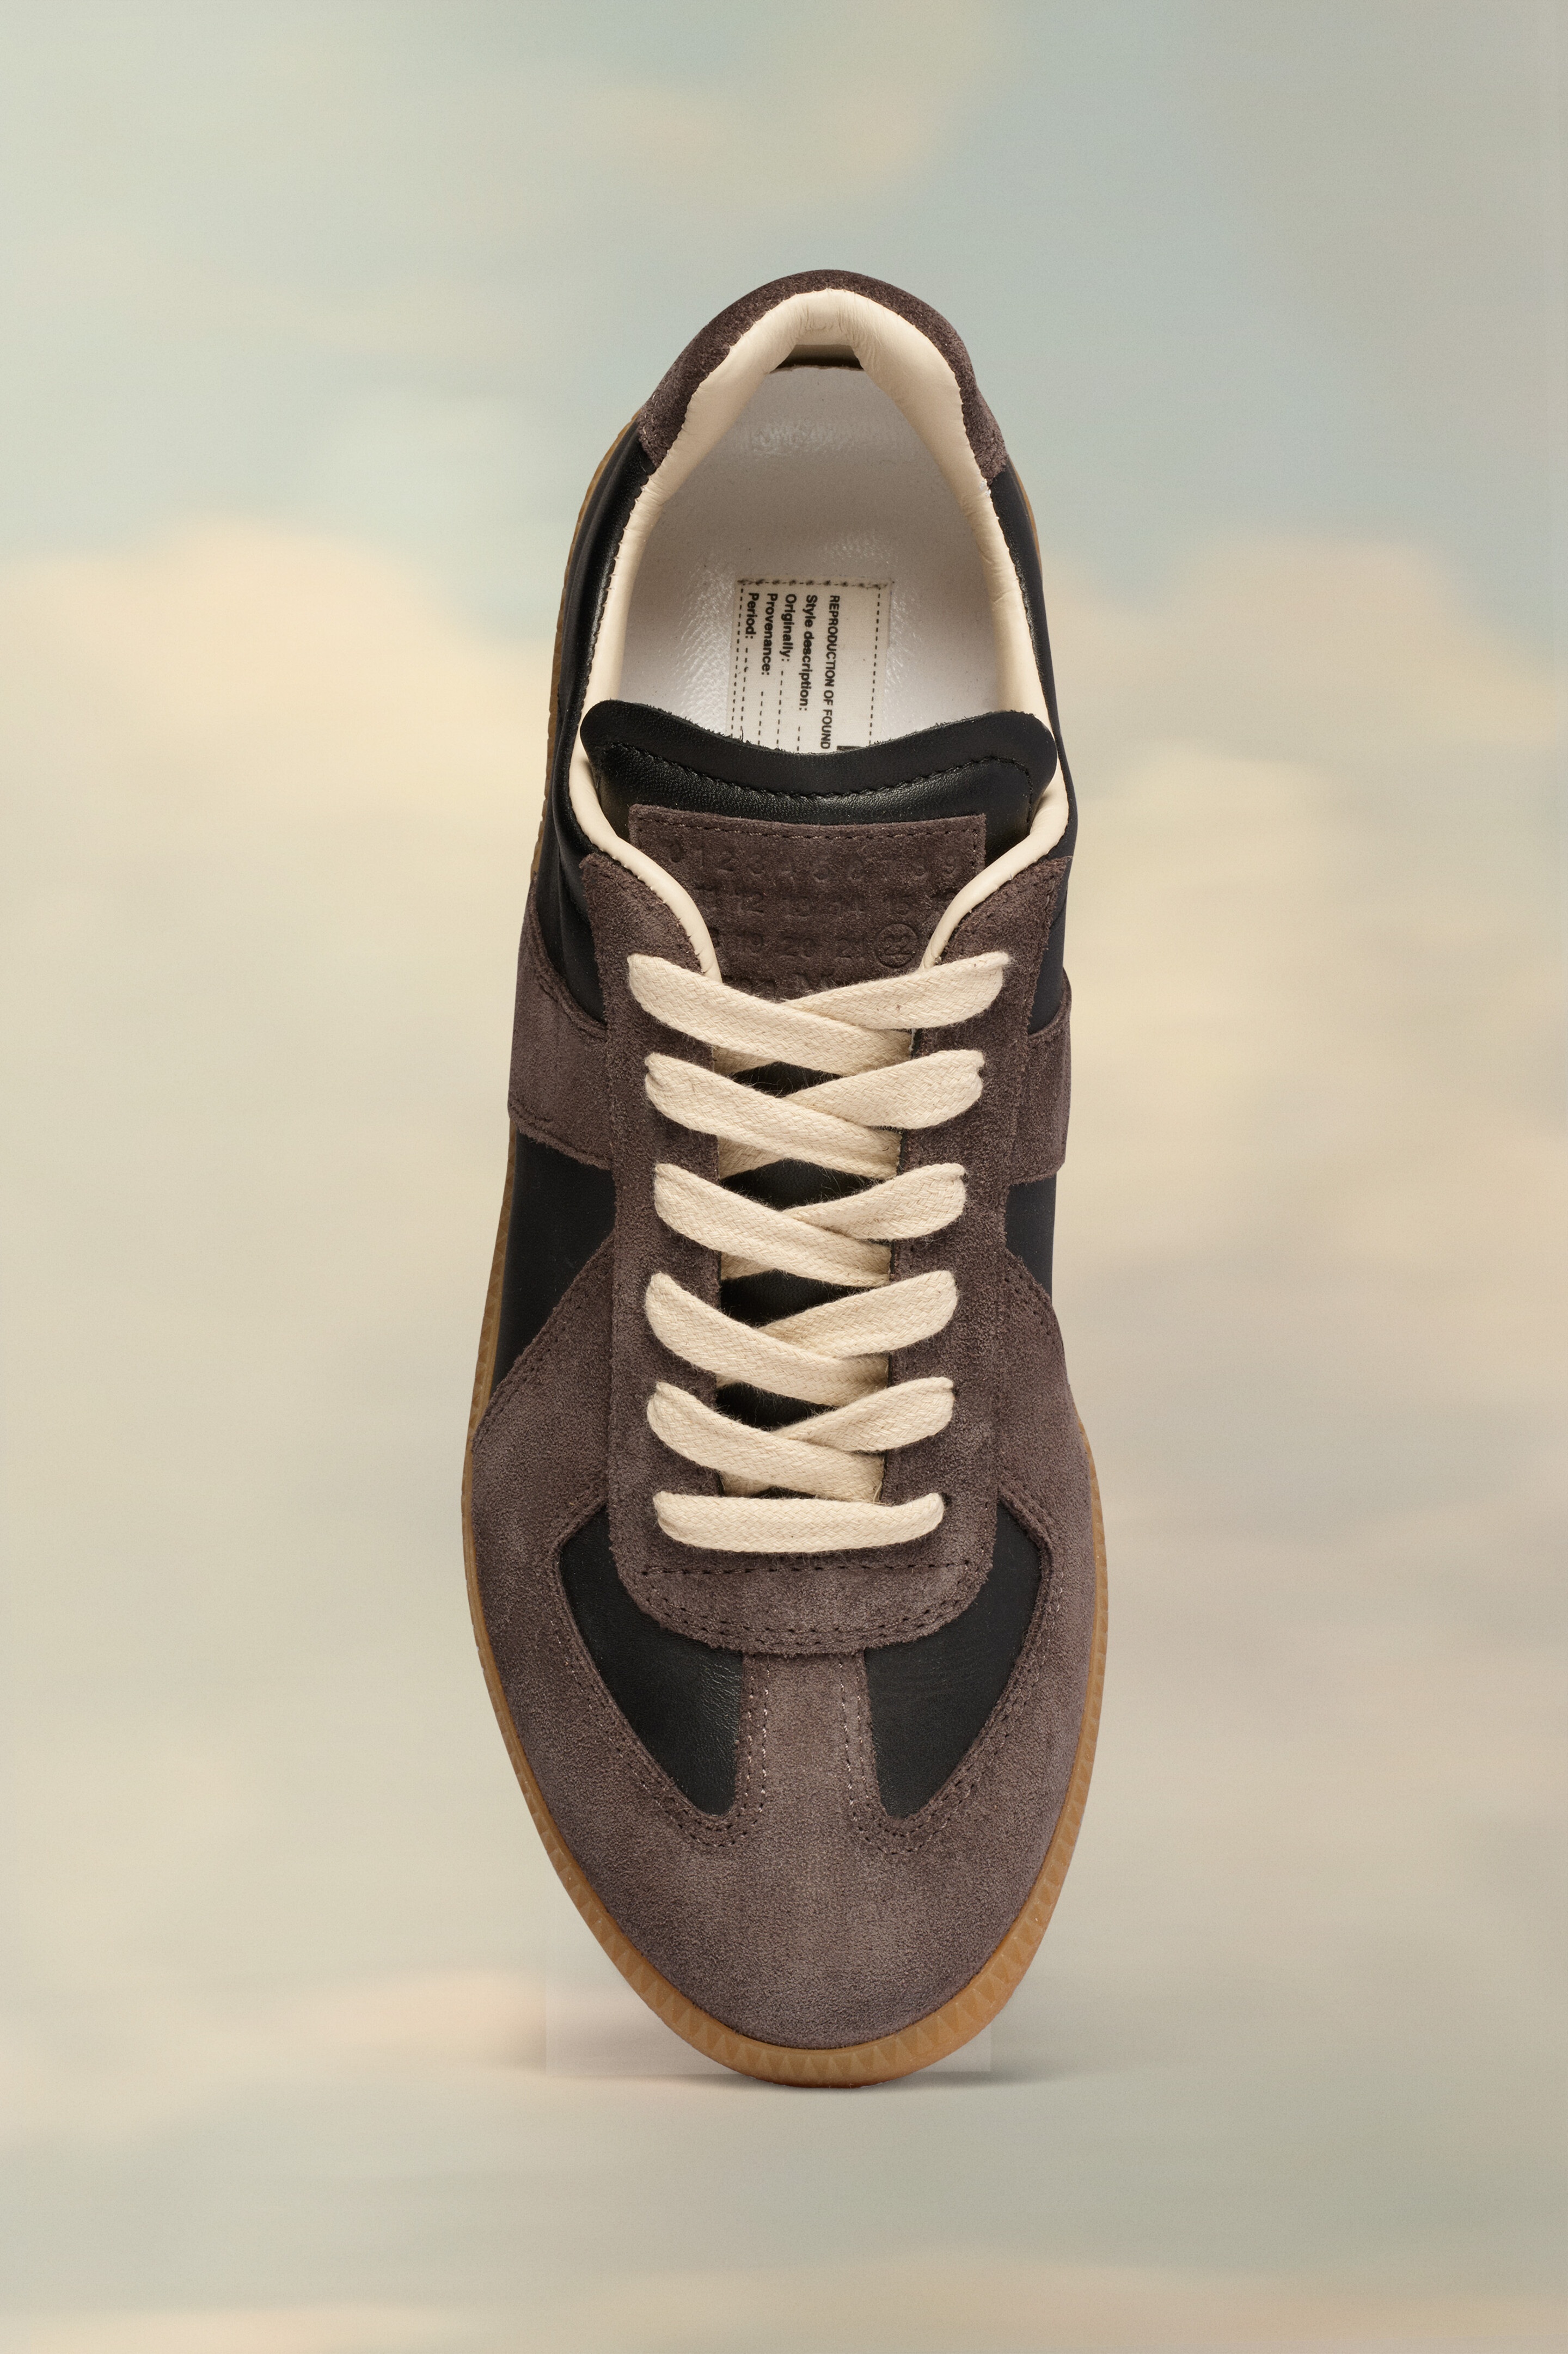 Replica sneakers - 2